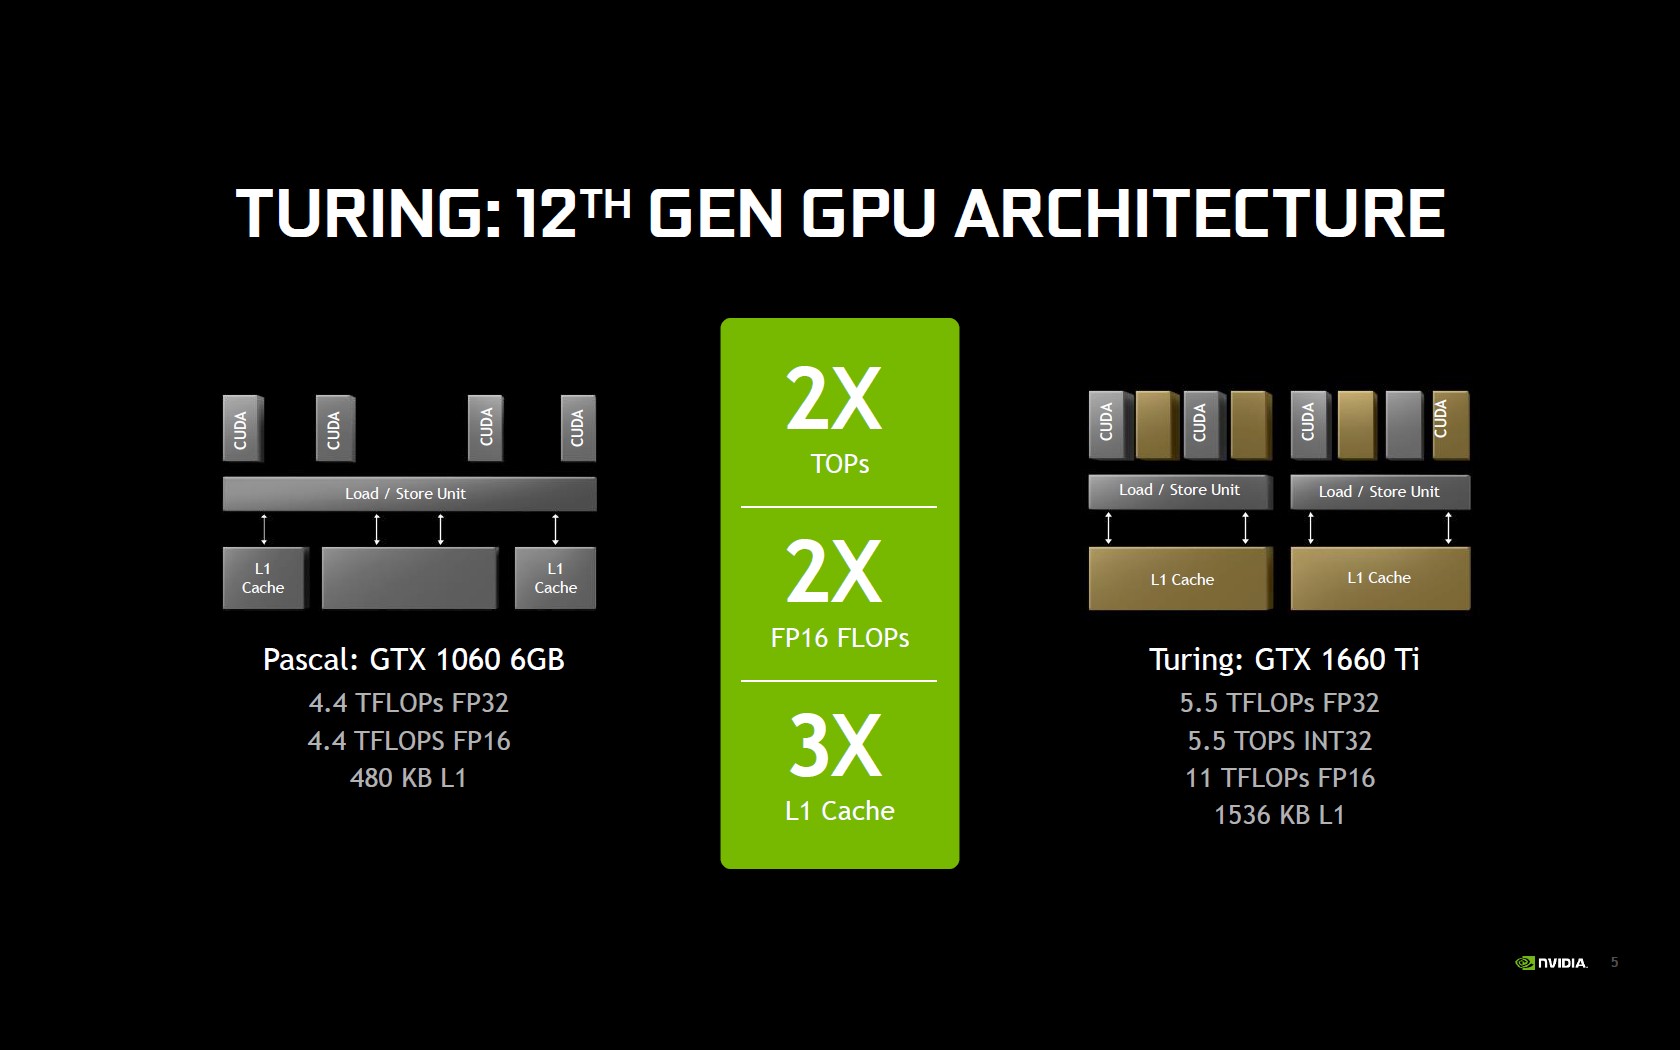 Обзор видеокарты MSI GeForce GTX 1660 Ti GAMING X 6G: лучше без лучей?